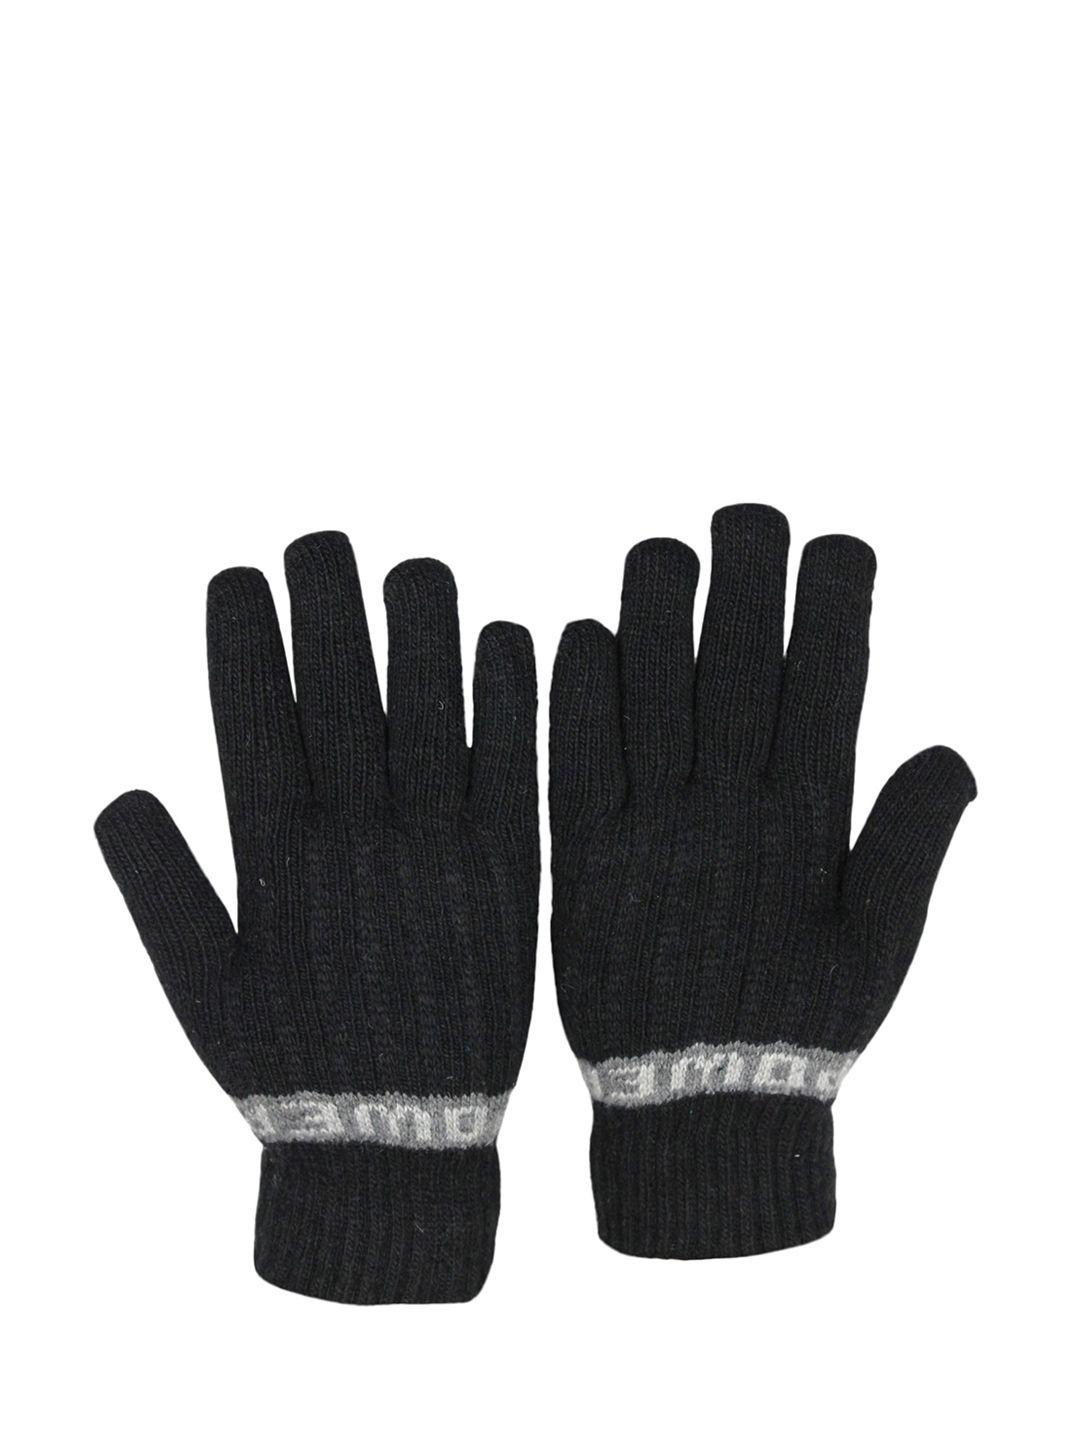 baesd men striped full finger woolen winter gloves